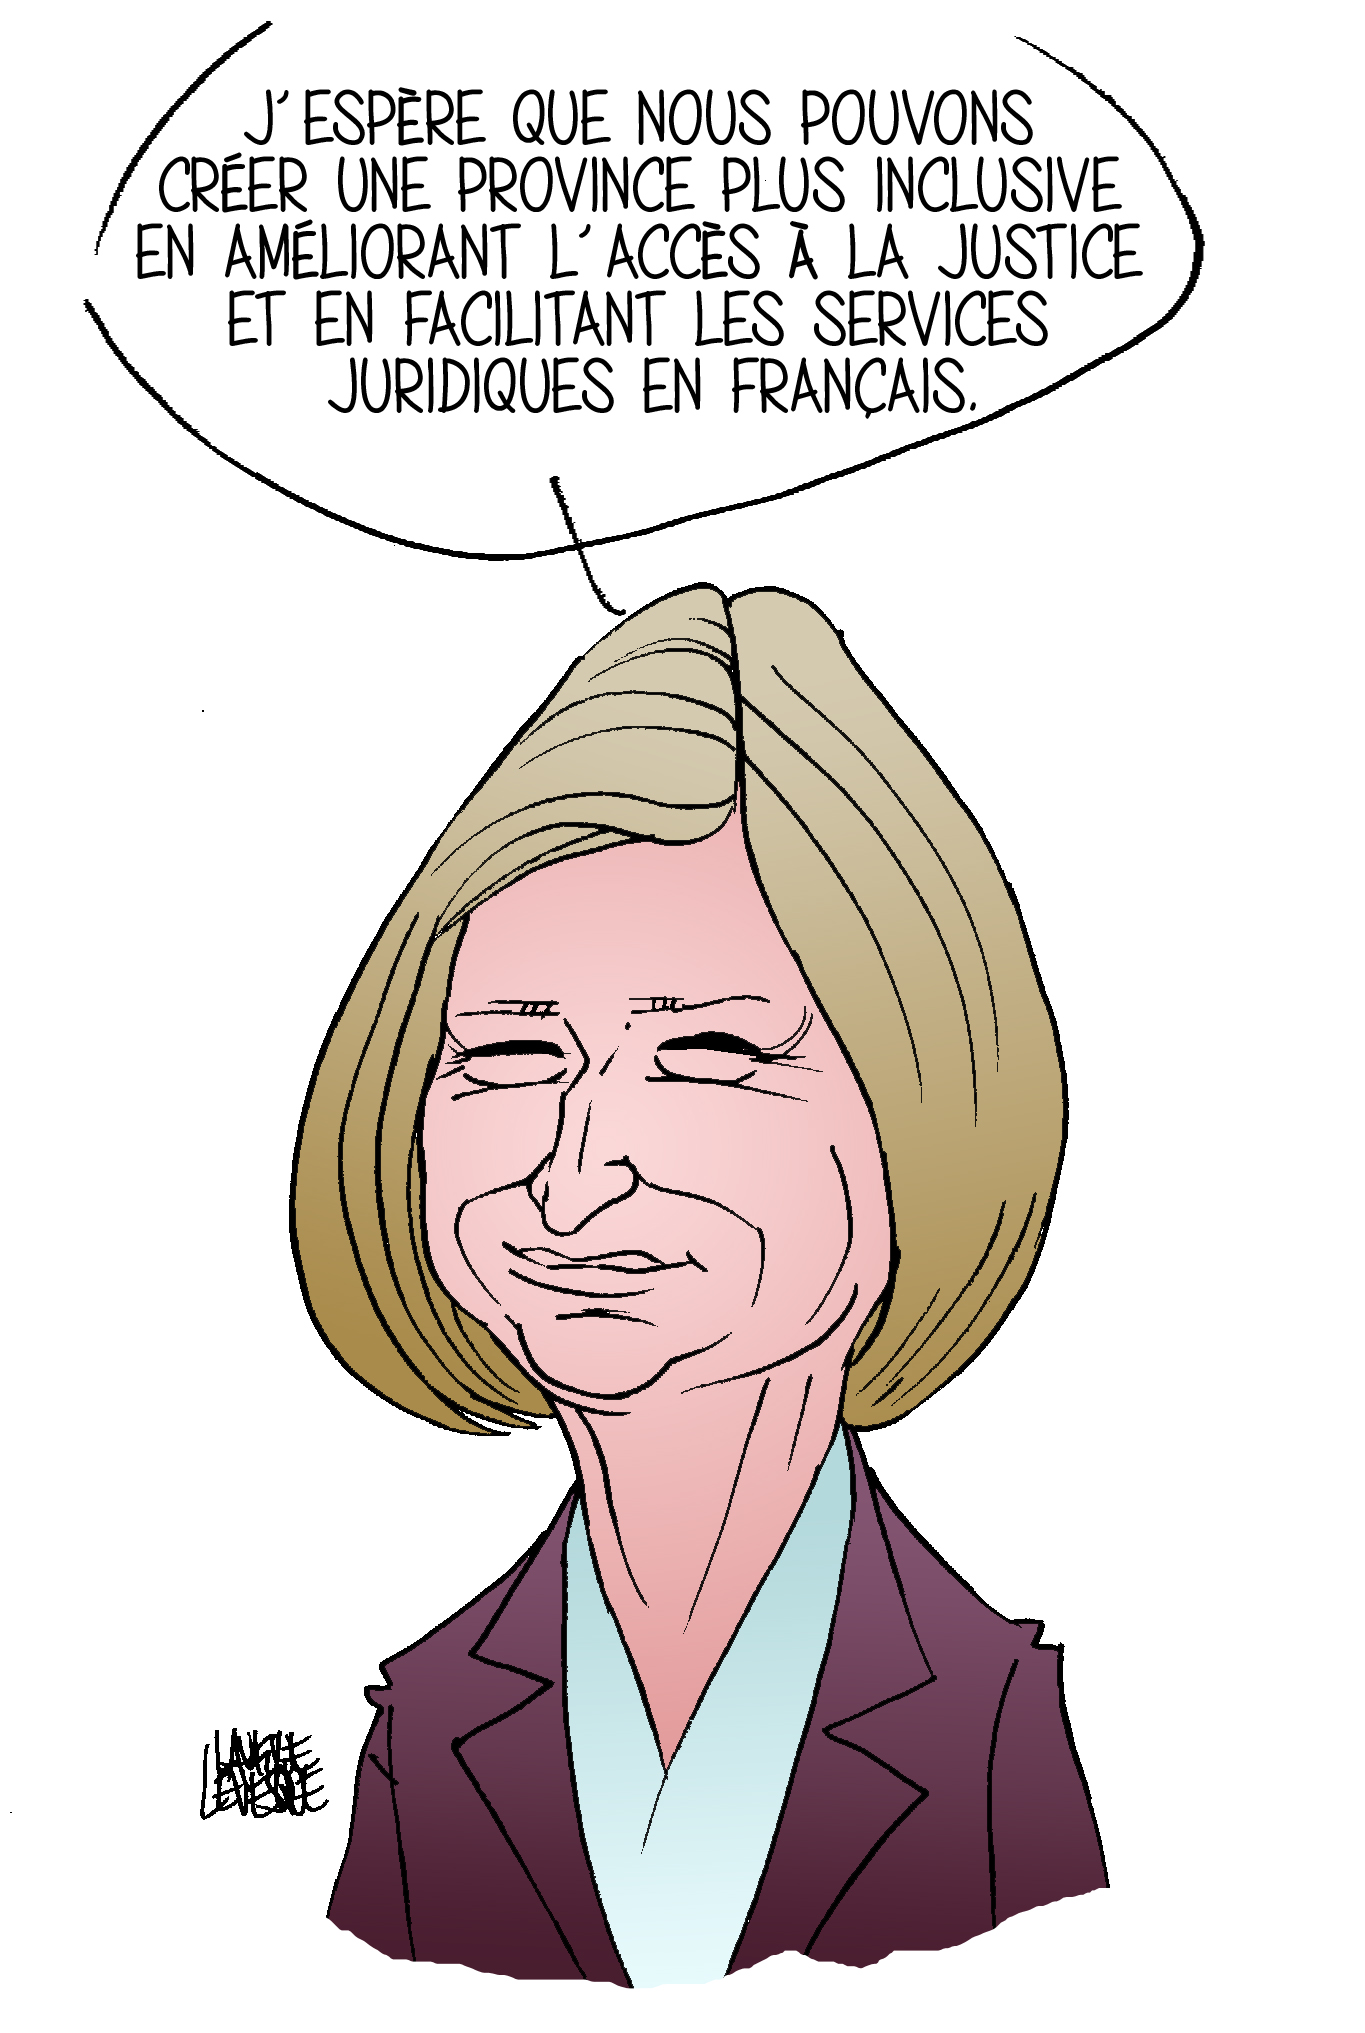 Michel Lavigne La Caricature Au Service Des Droits Et De La Justice